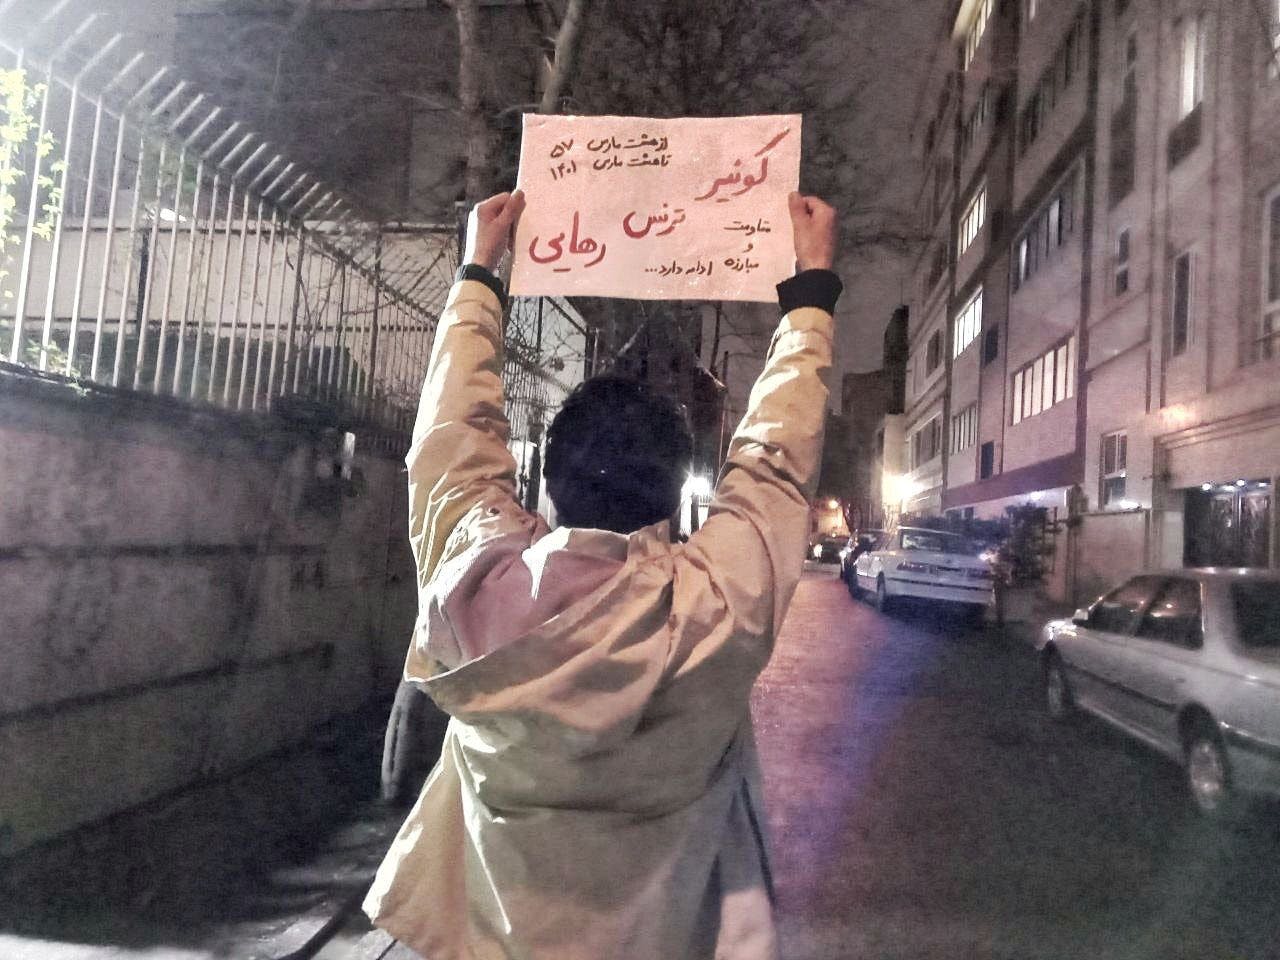 تصویر از شبکه‌های اجتماعی: یک نفر در ایران تابلویی بالا گرفته که بر آن نوشته شده کوئیر ترنس رهایی